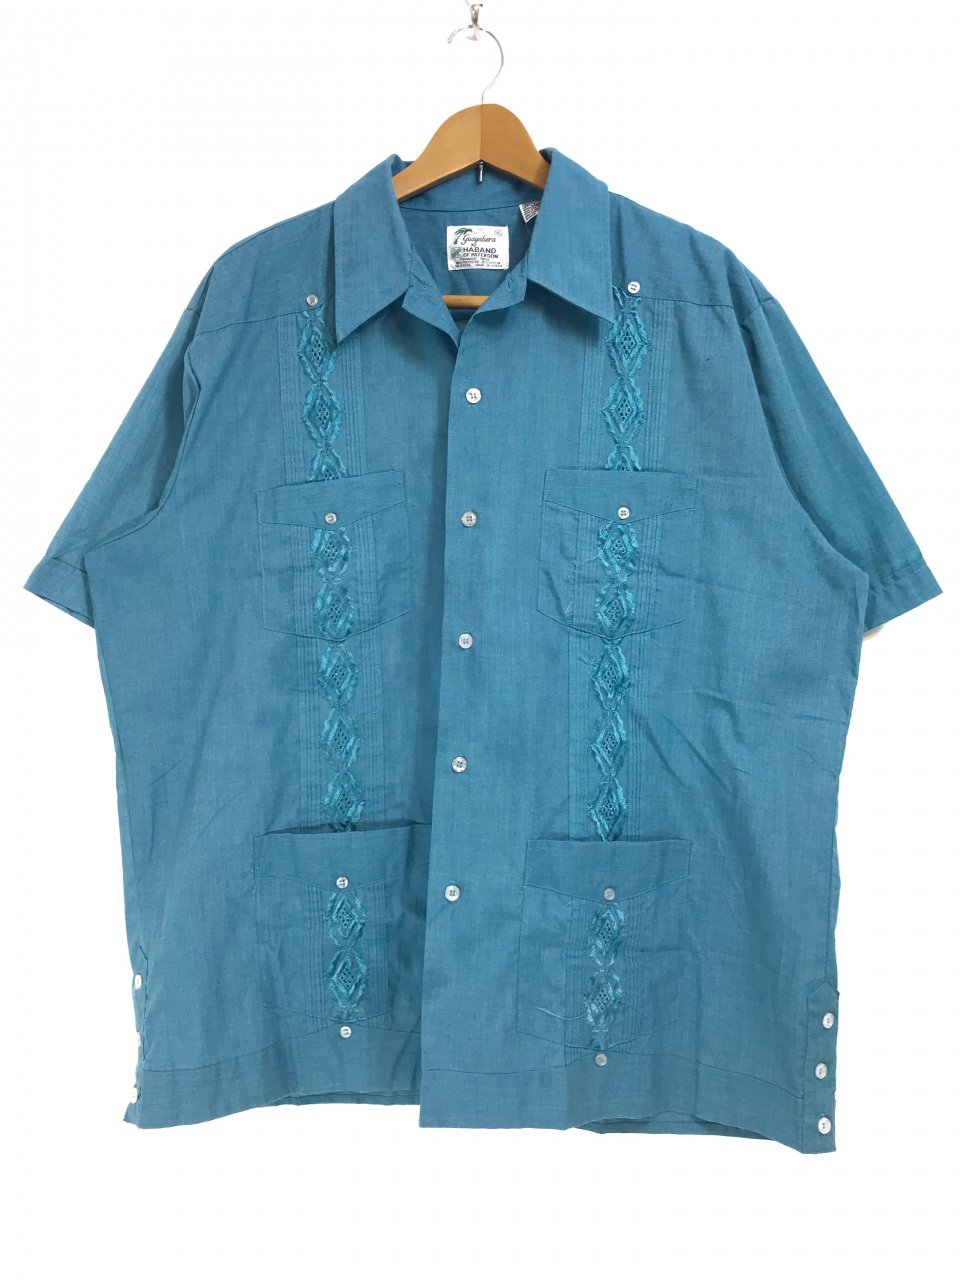 70s～80s GUAYABERA by HABAND S/S Cuba Shirts エメラルド XL 半袖 